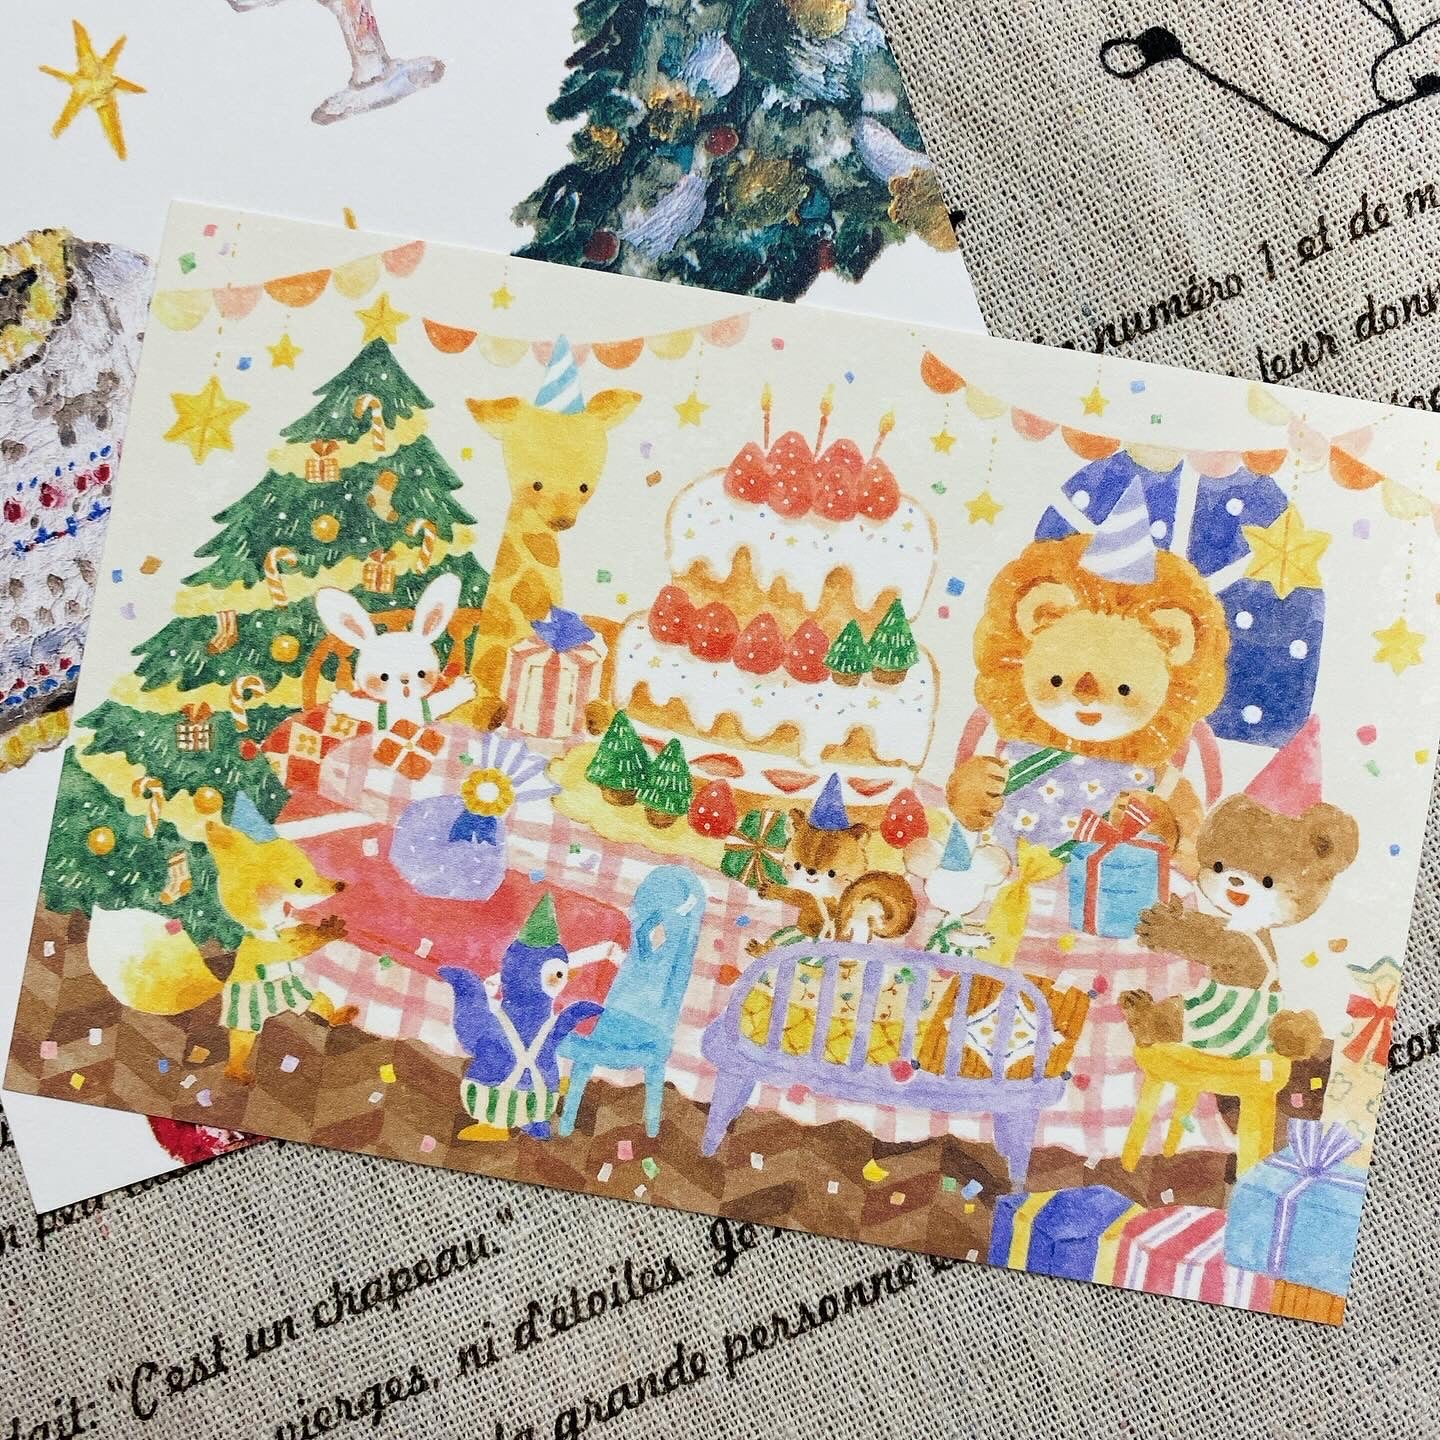 日本Cerald 聖誕卡- 和動物們的Christmas Time